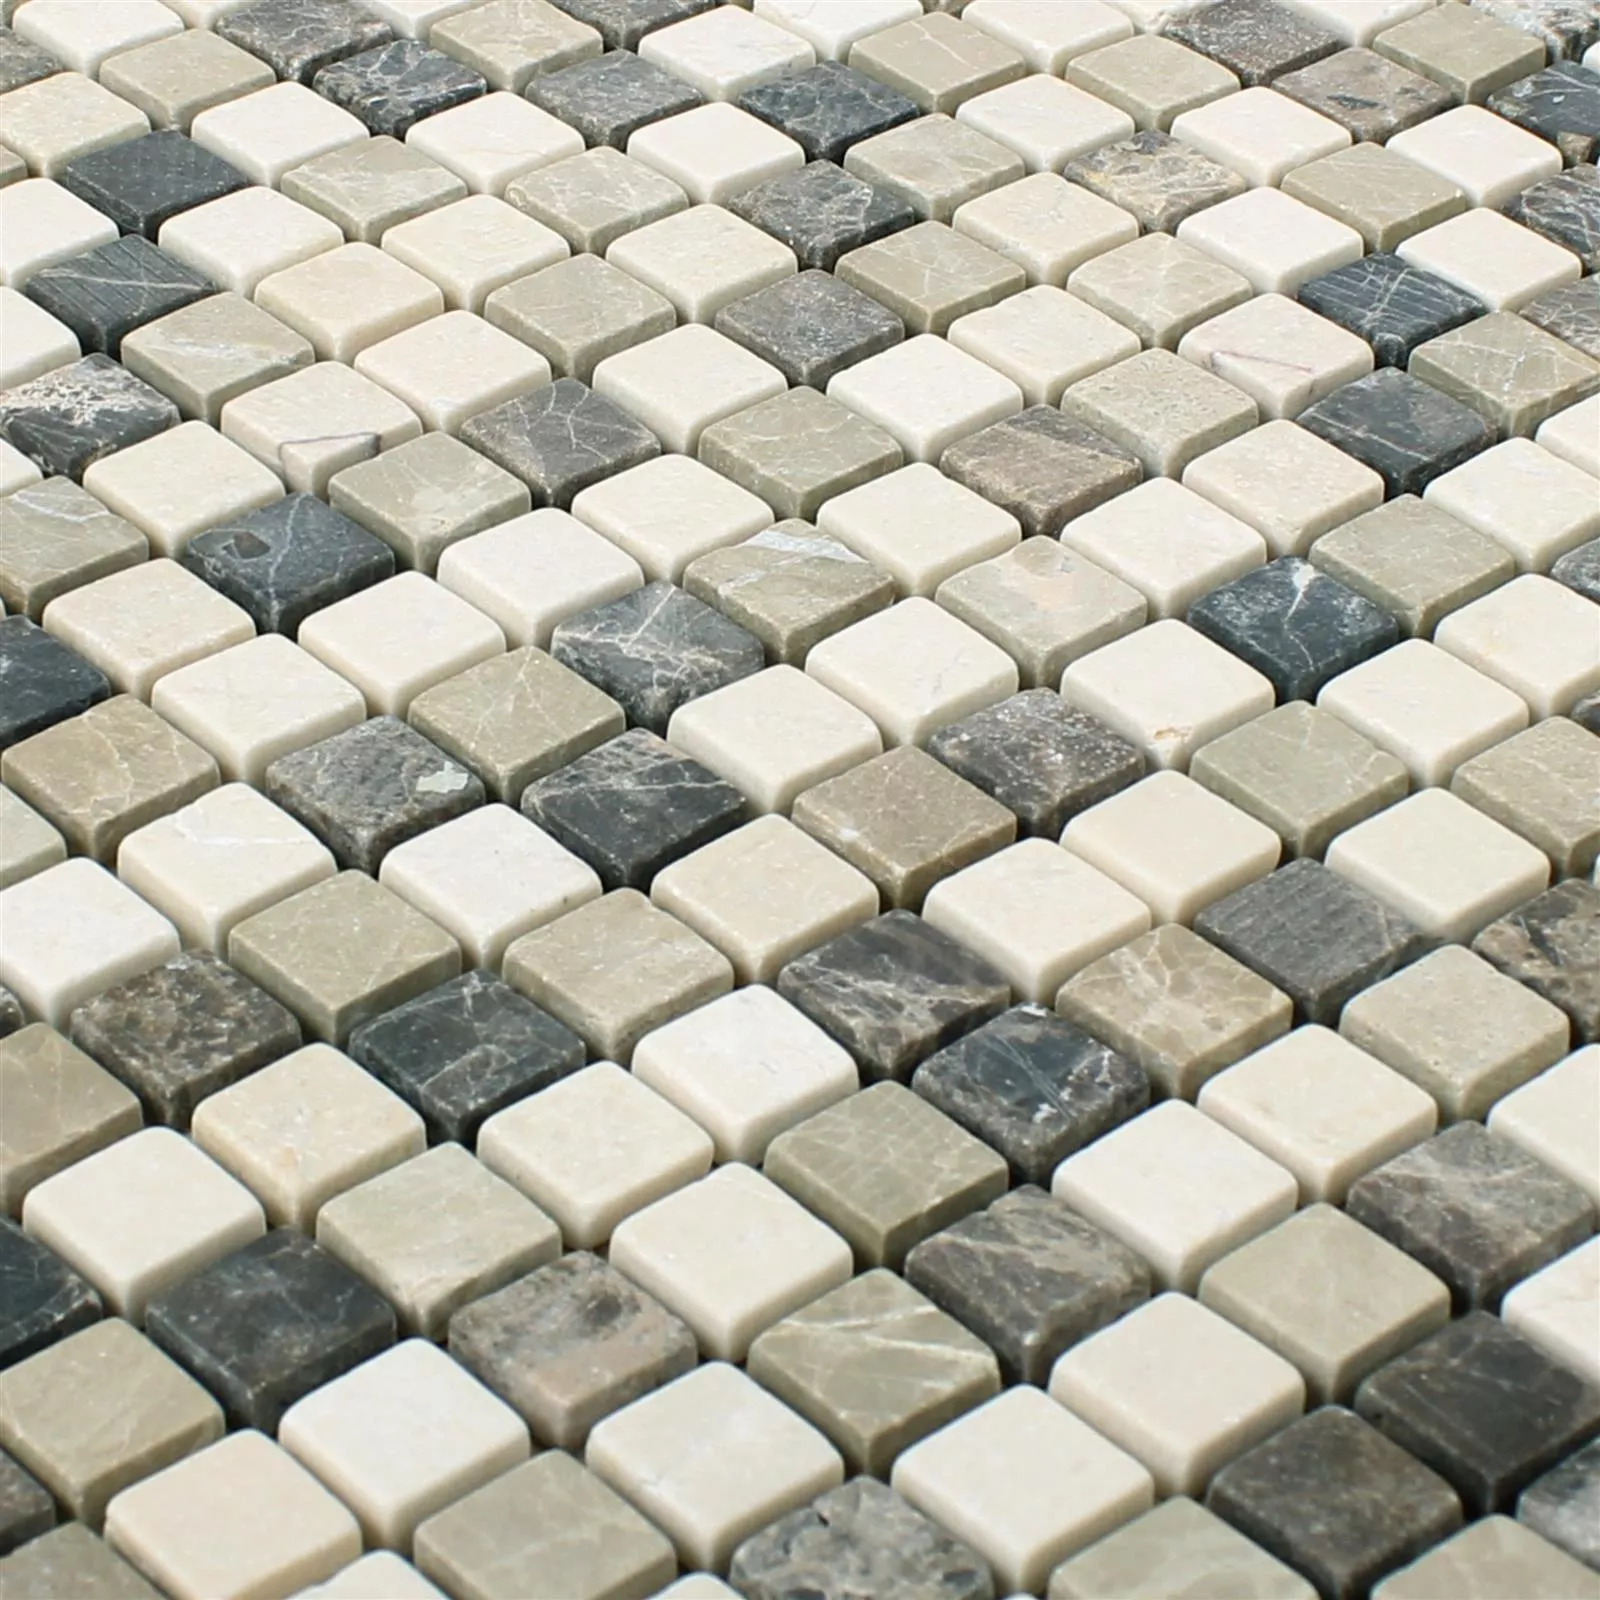 Sample Mosaic Tiles Marble Natural Stone Waranya